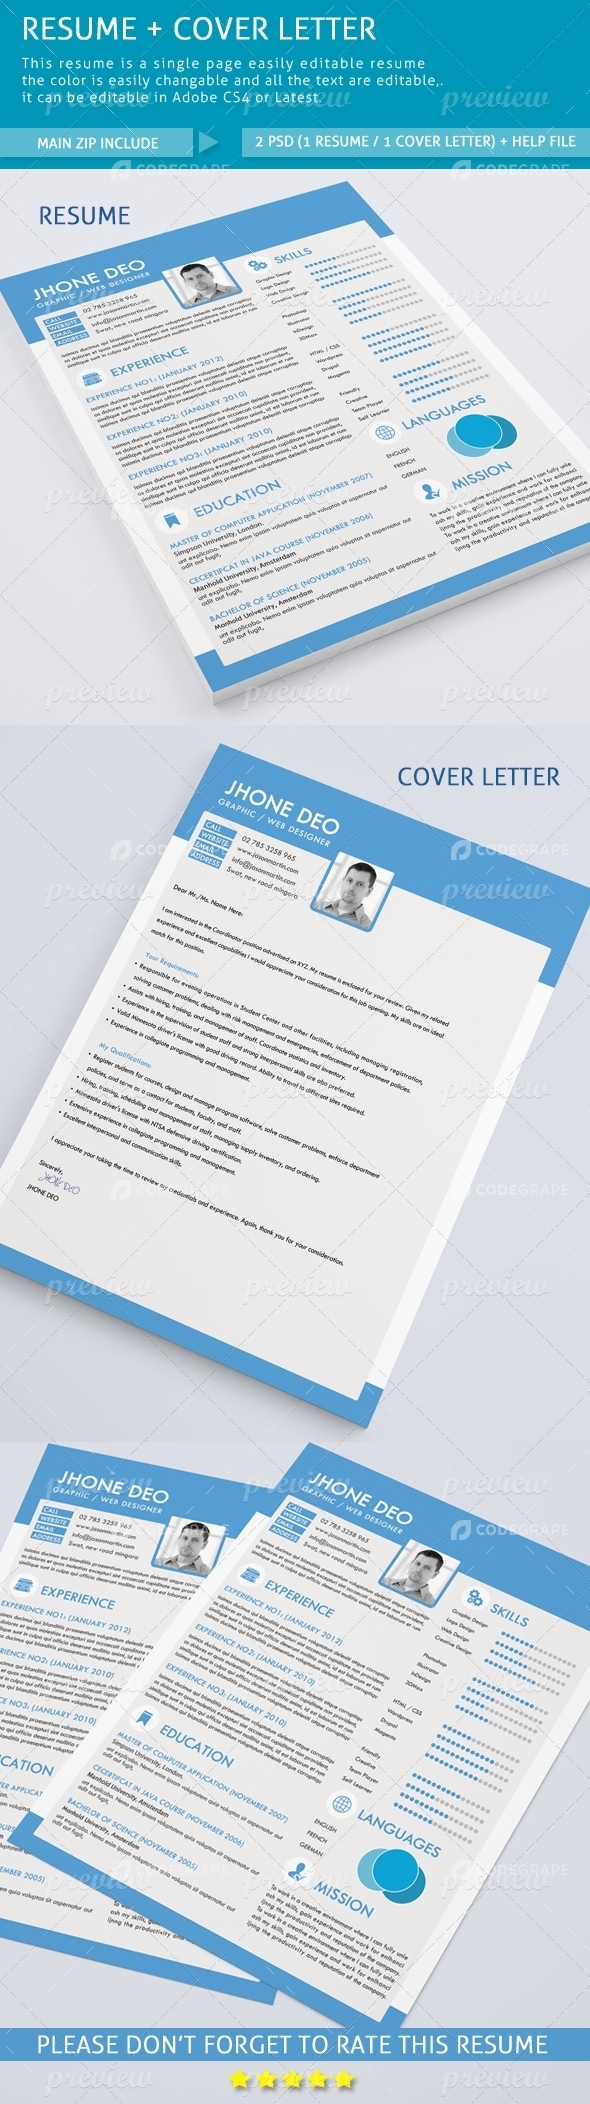 Resume+Cover Letter